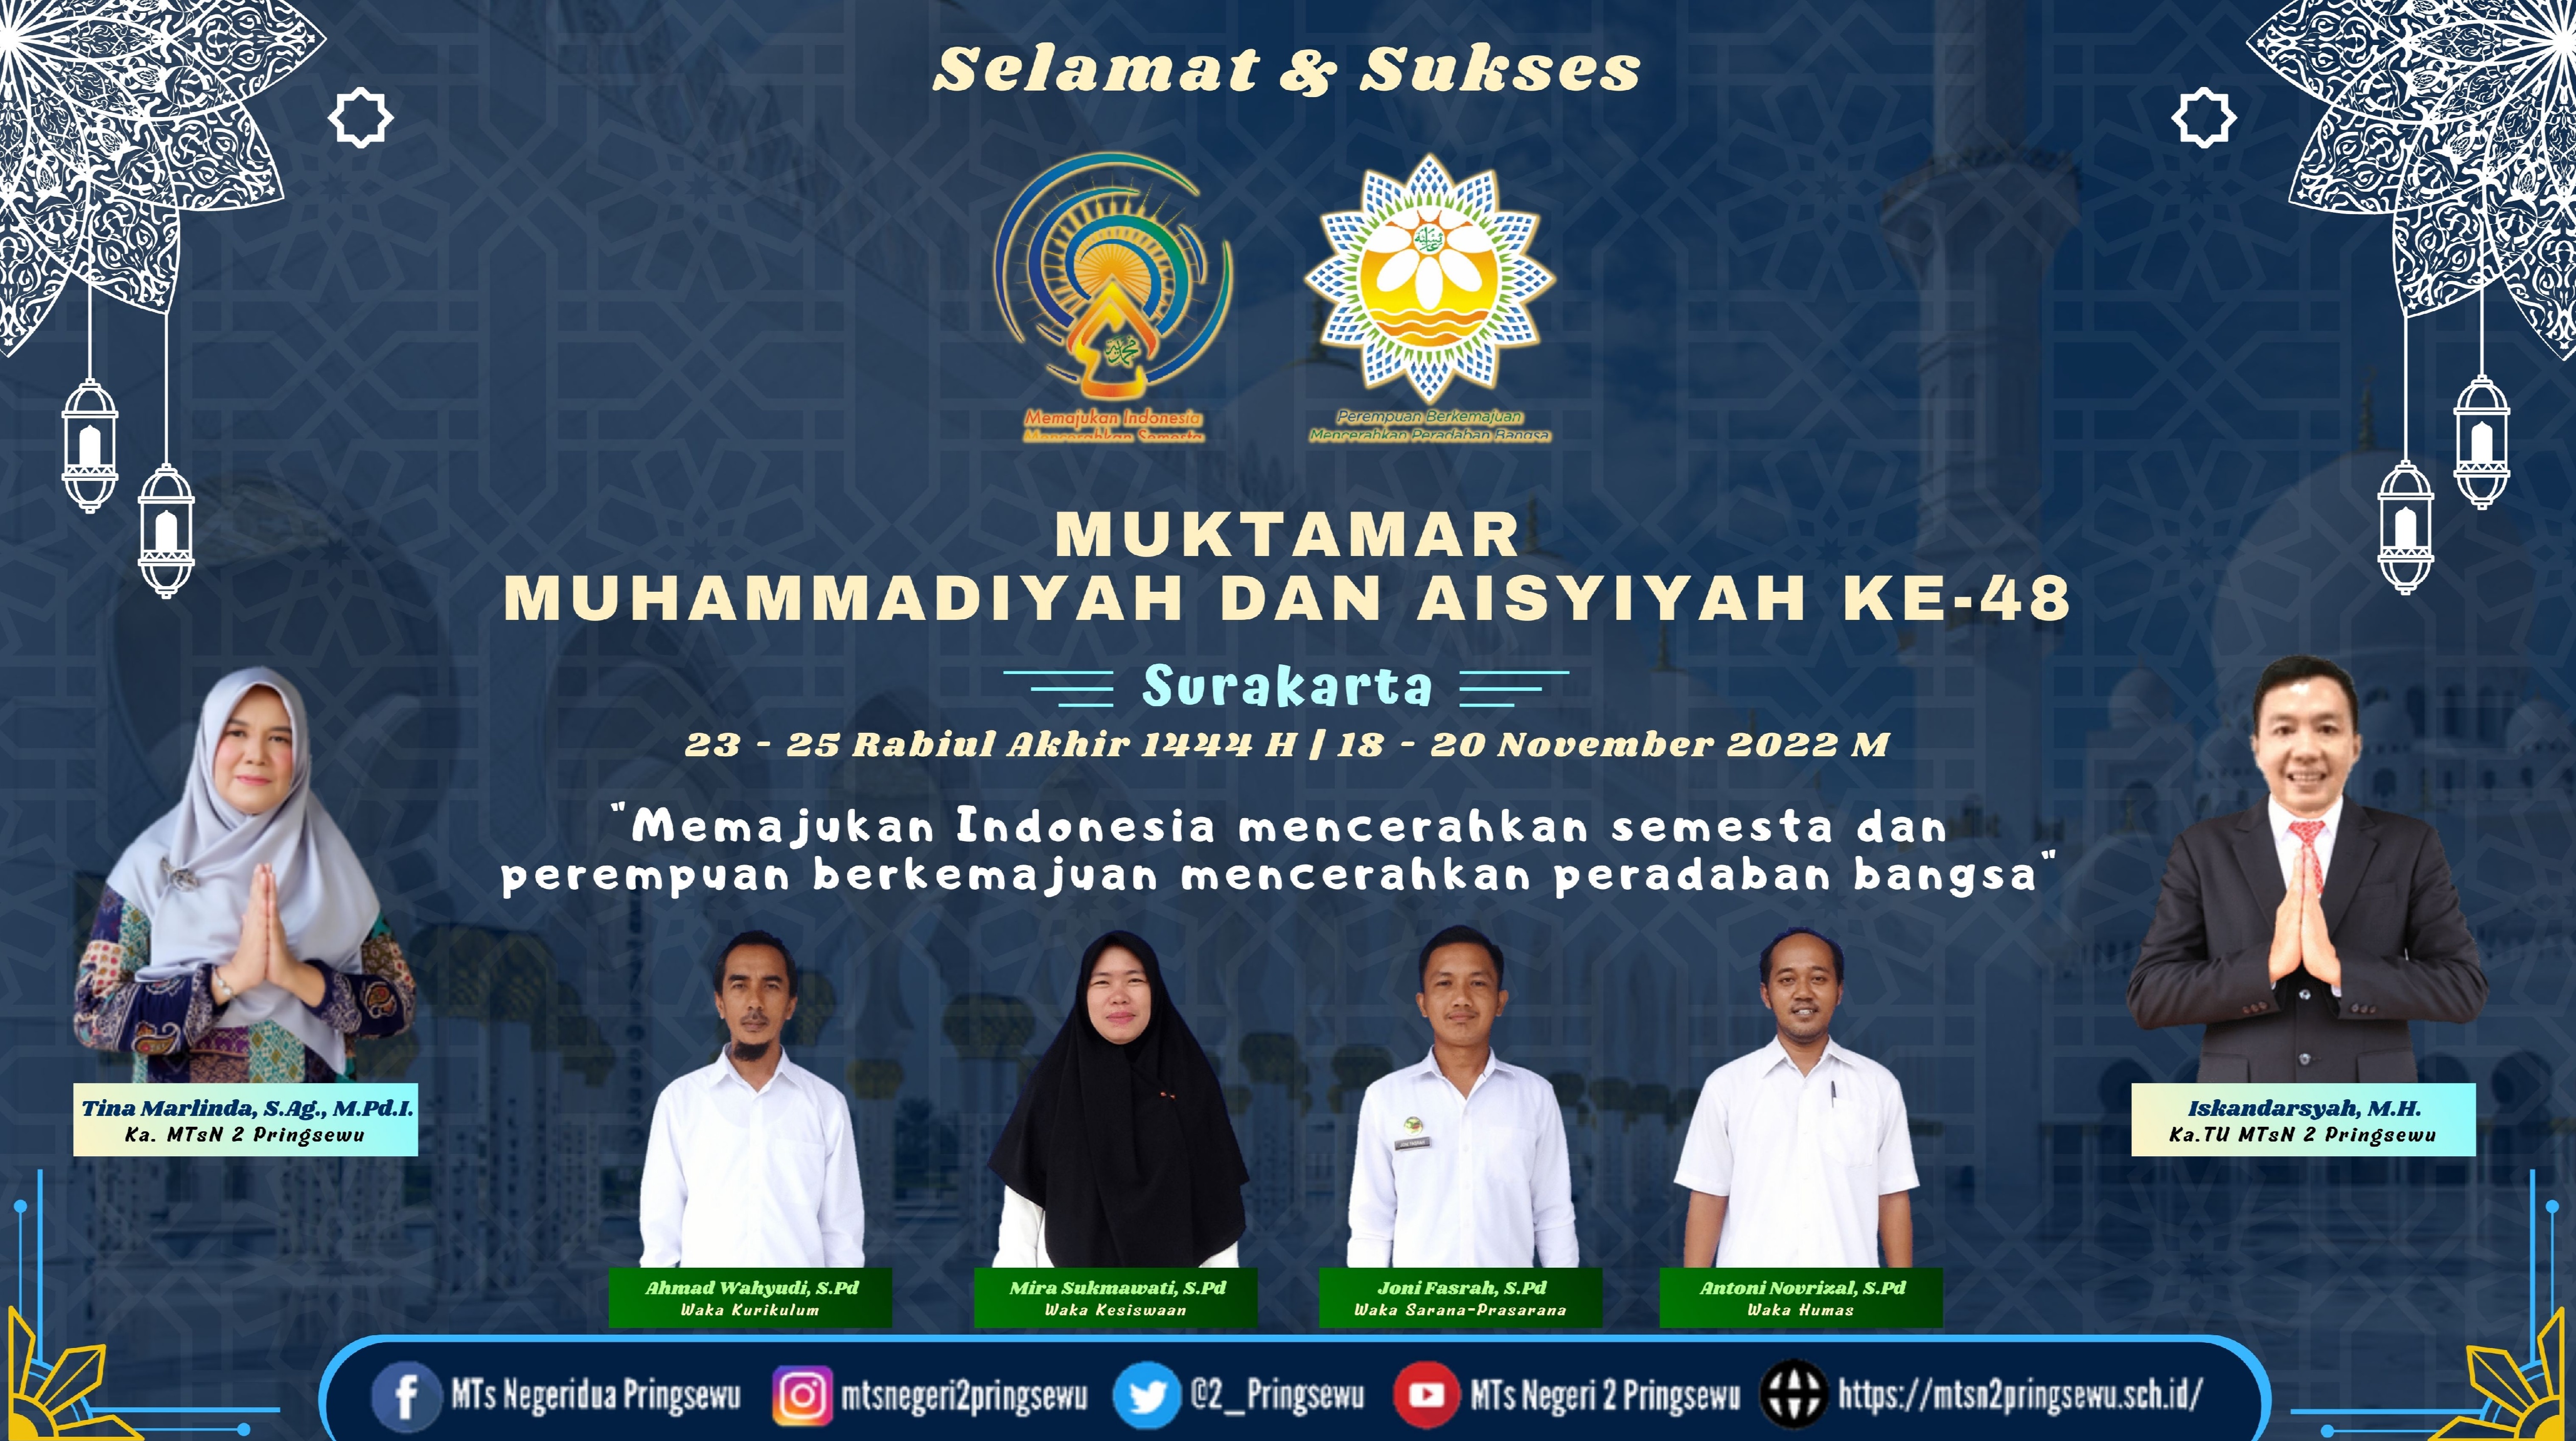 Muktamar Muhhamadiyah & Aisyiyah ke-48